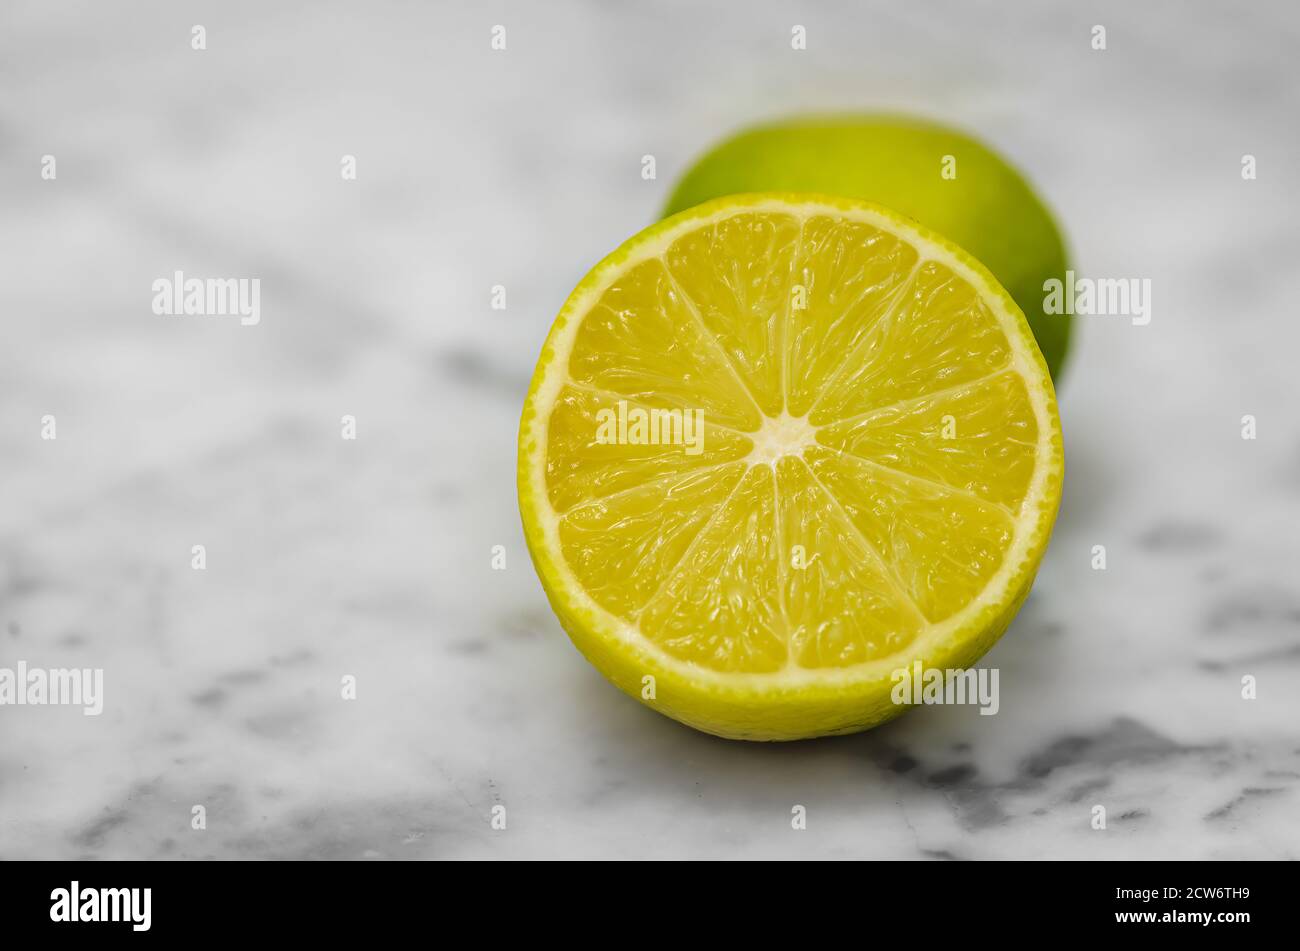 Closeup of a cut lemon on white Marble Table. Macro Shot. Stock Photo